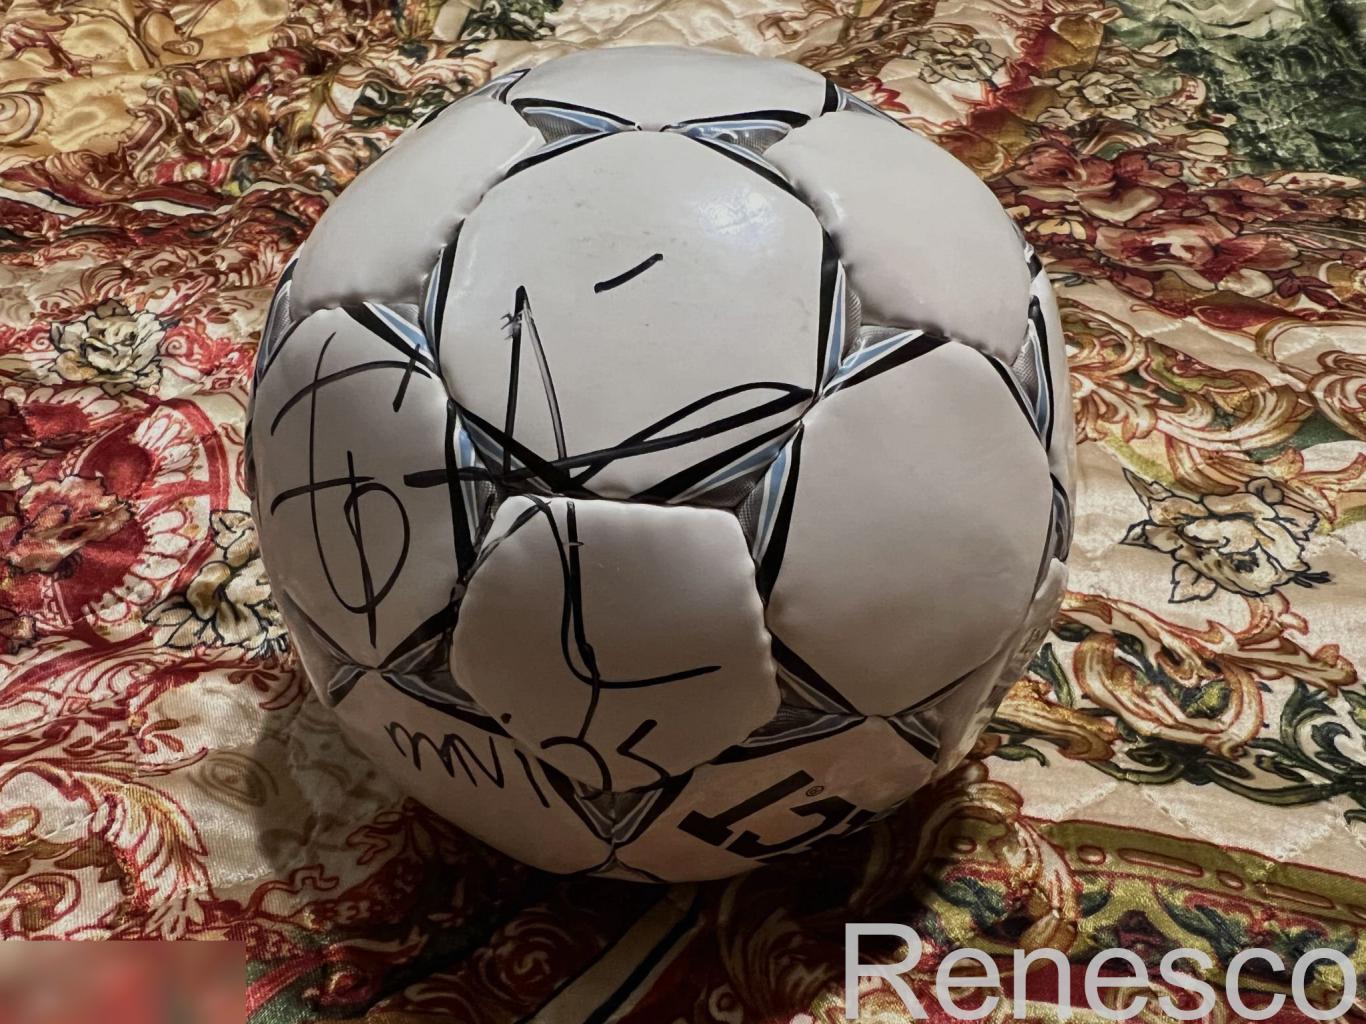 Автограф Эдгара Давидса (Edgar Davids) на футбольном мяче.